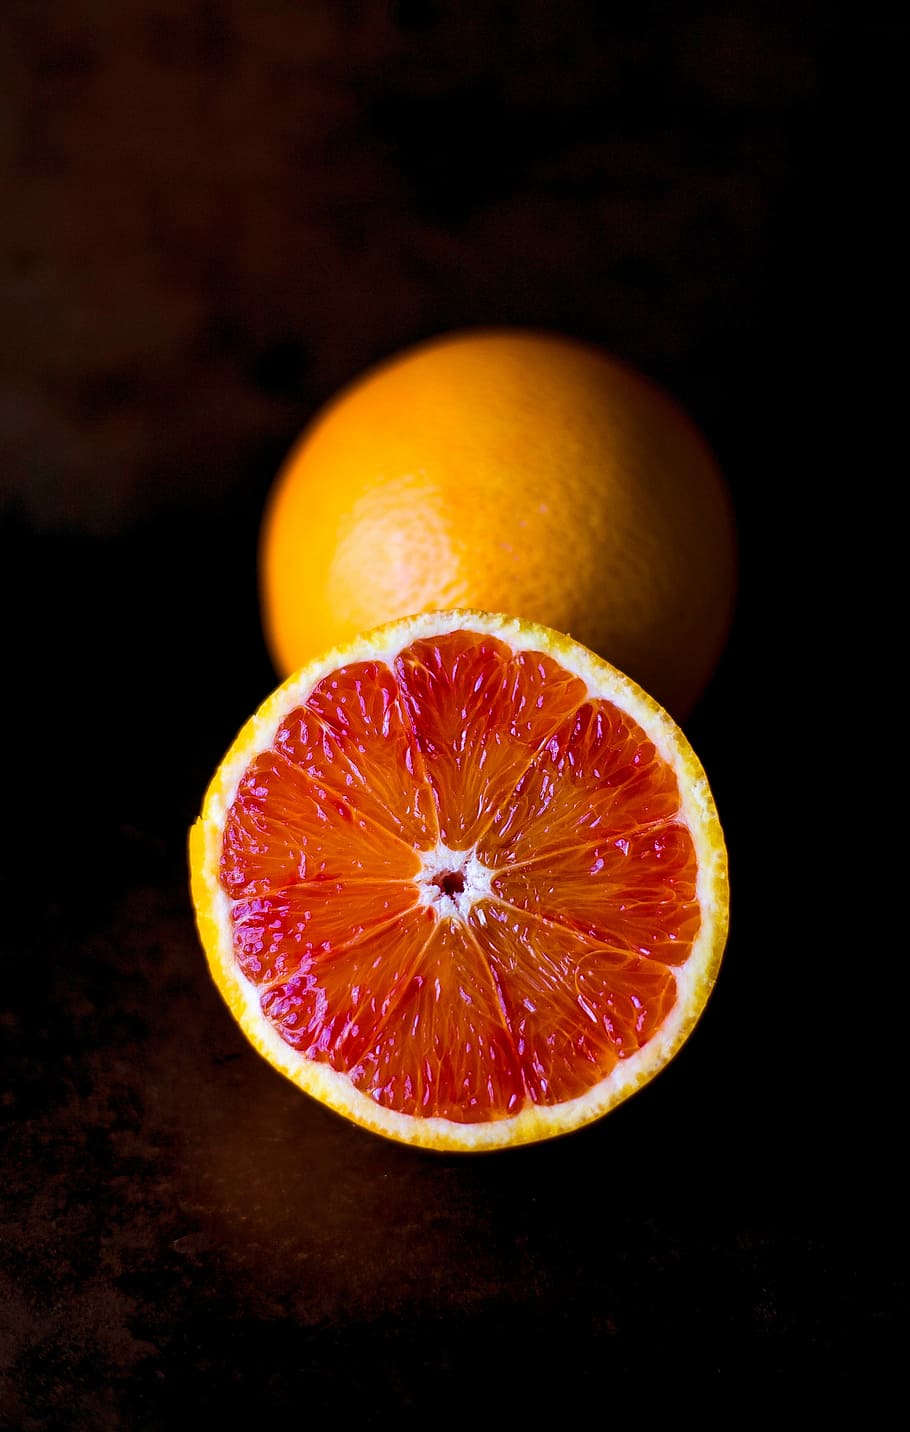 Blood orange, citrus, fruit, minimalistic, red, simplistic, citrus Fruit